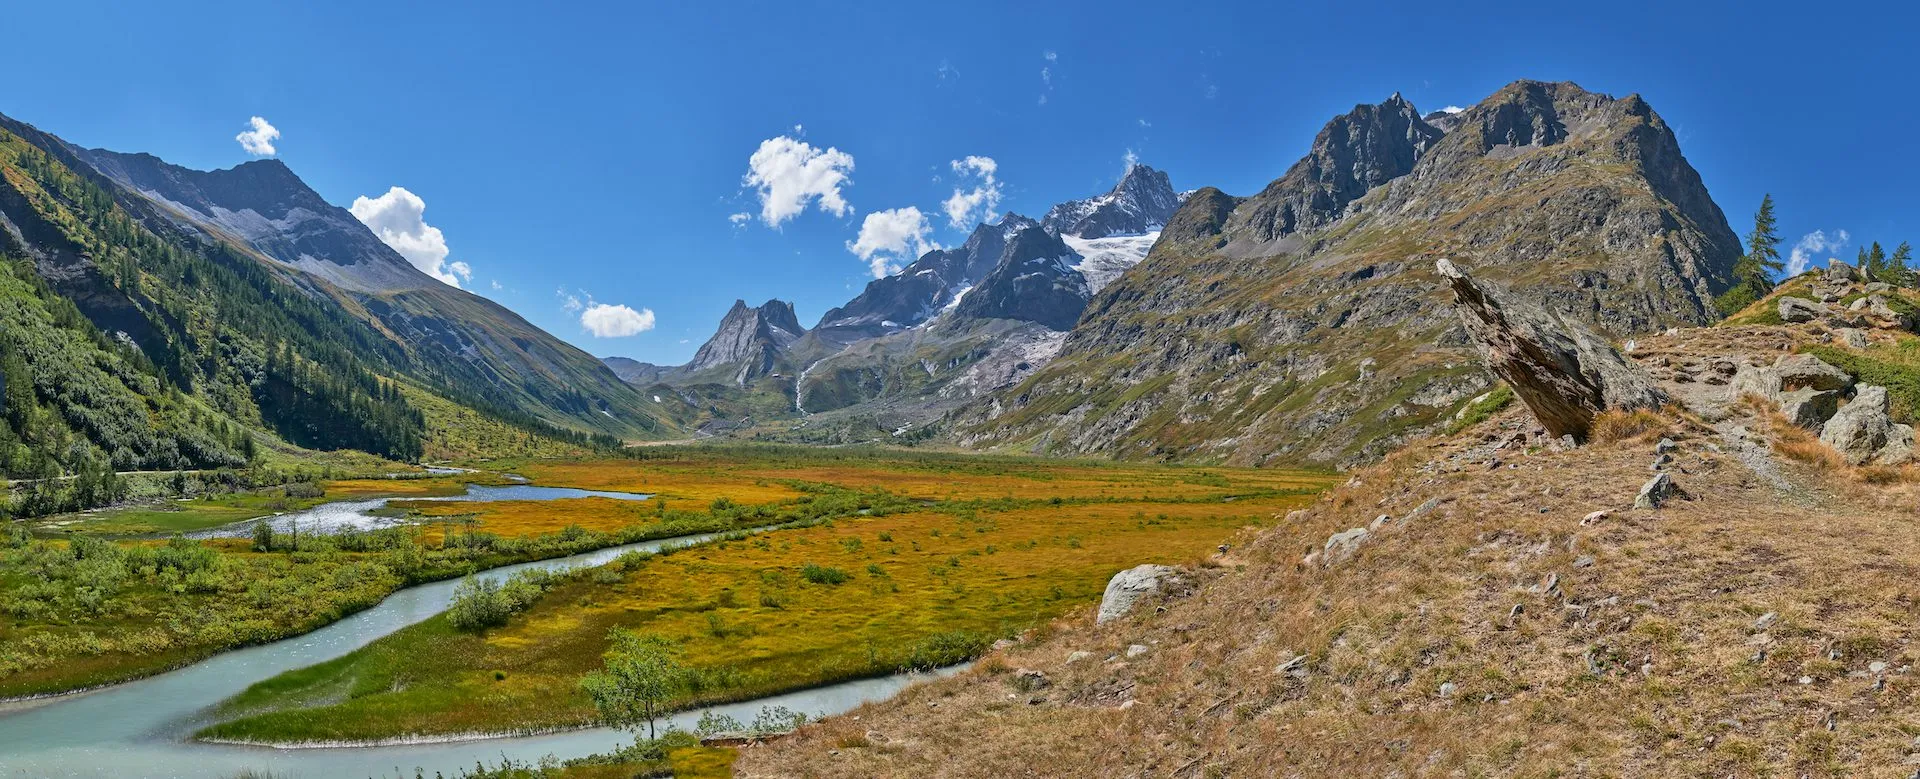 Vue panoramique des Alpes italiennes depuis le massif du Mont Blanc avec la vallée du Val Veny et le lac de Combal